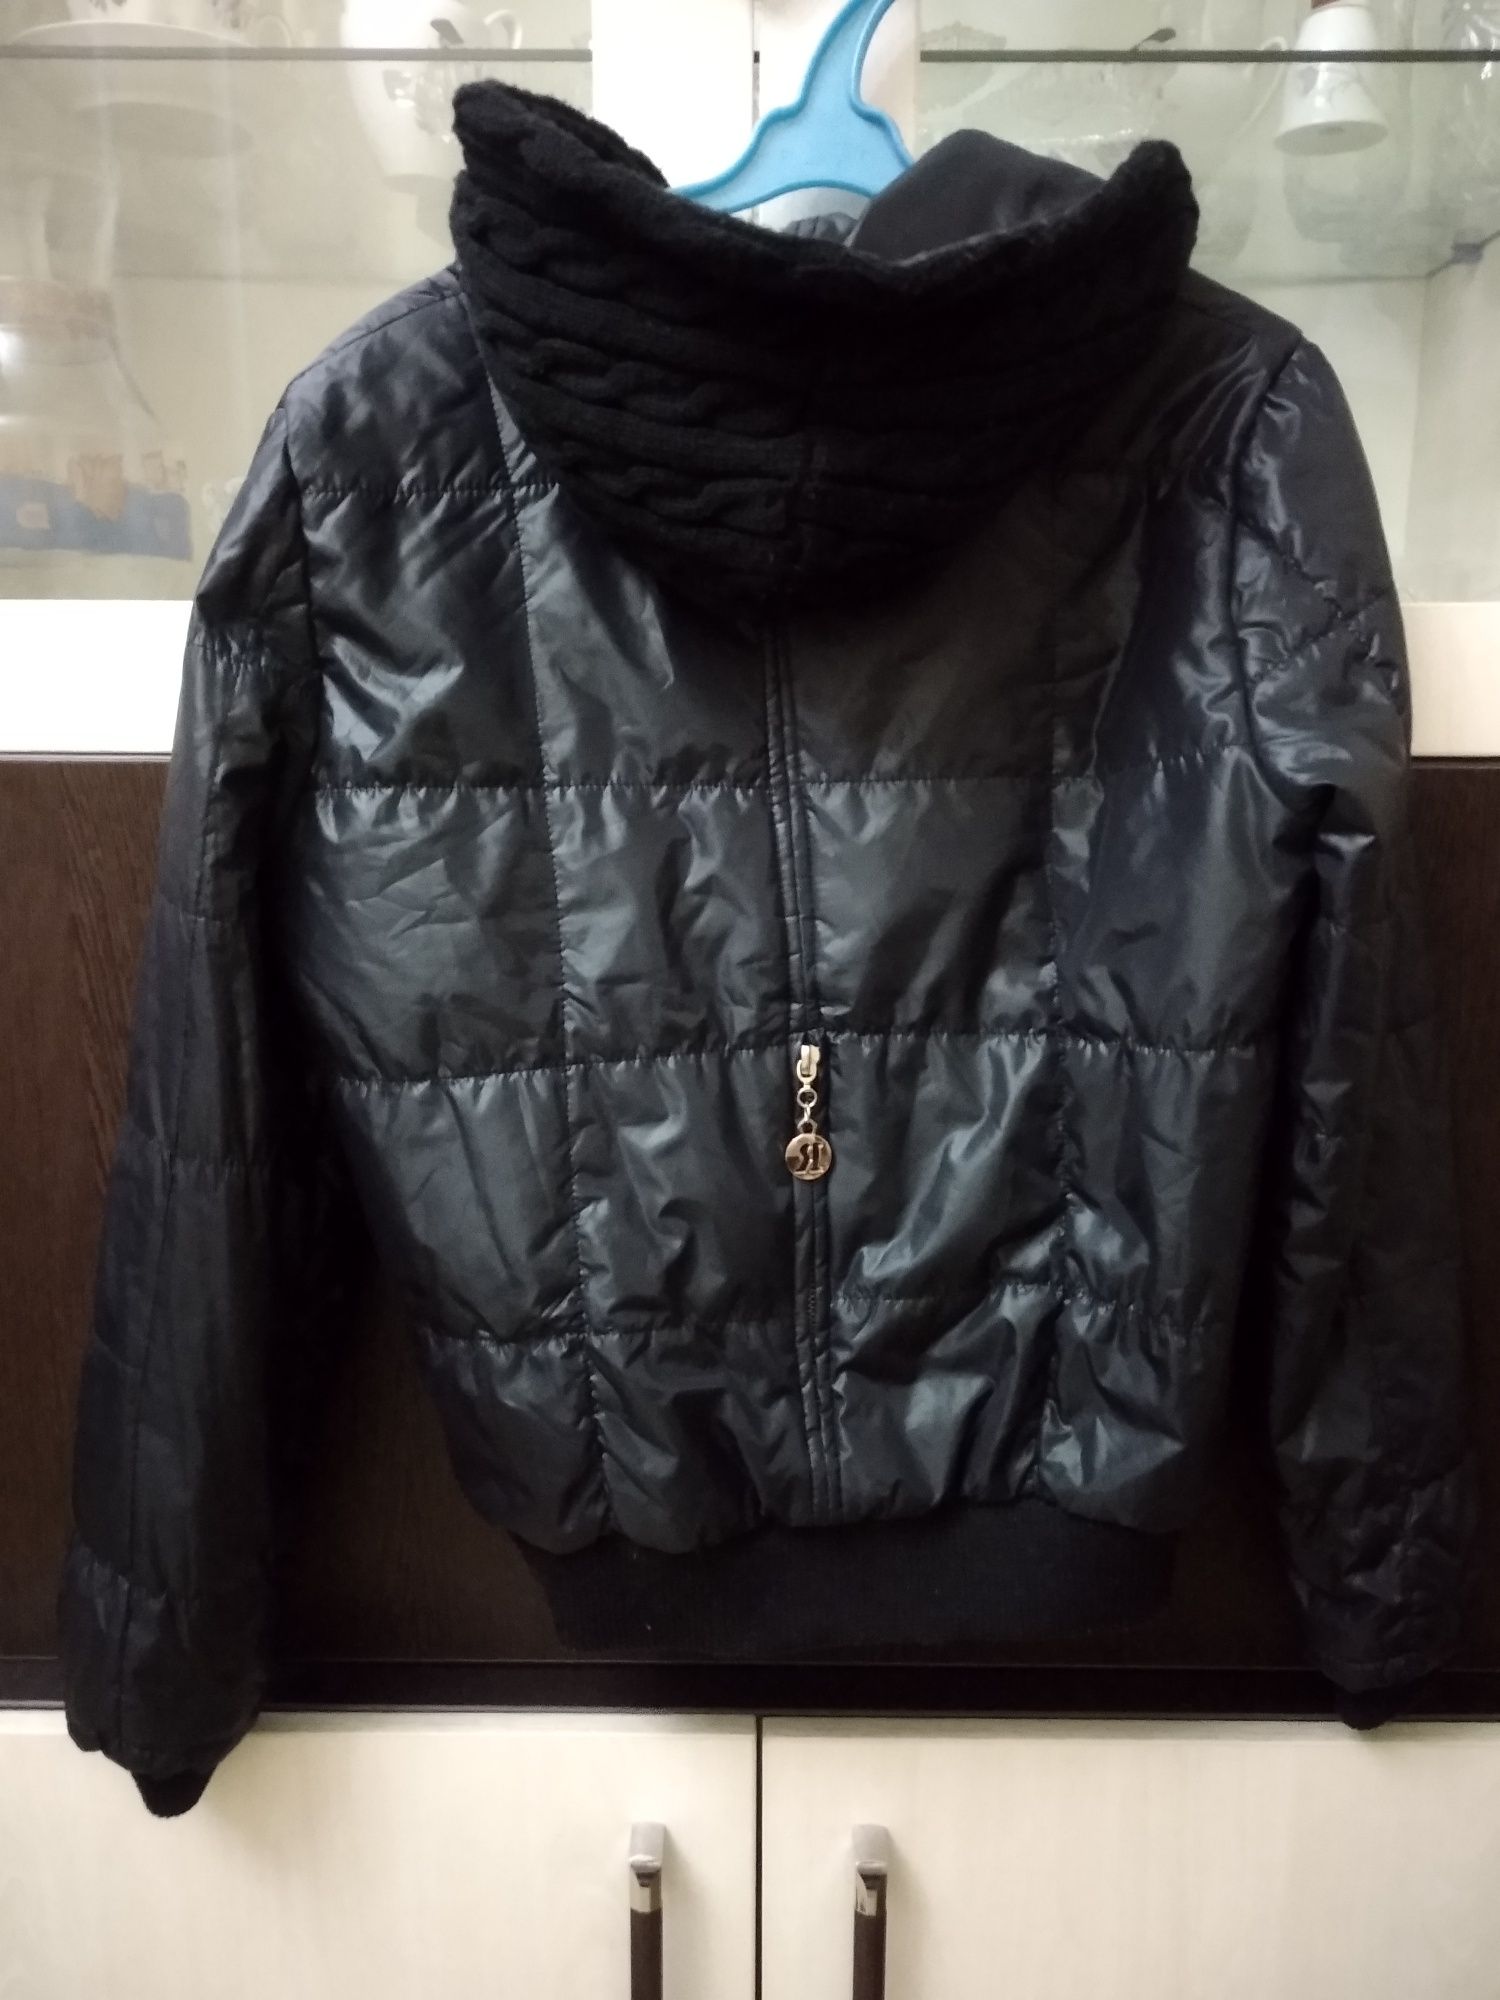 Куртка болоневая женская.в отличном состоянии.размер 44.цена 60.000.ле